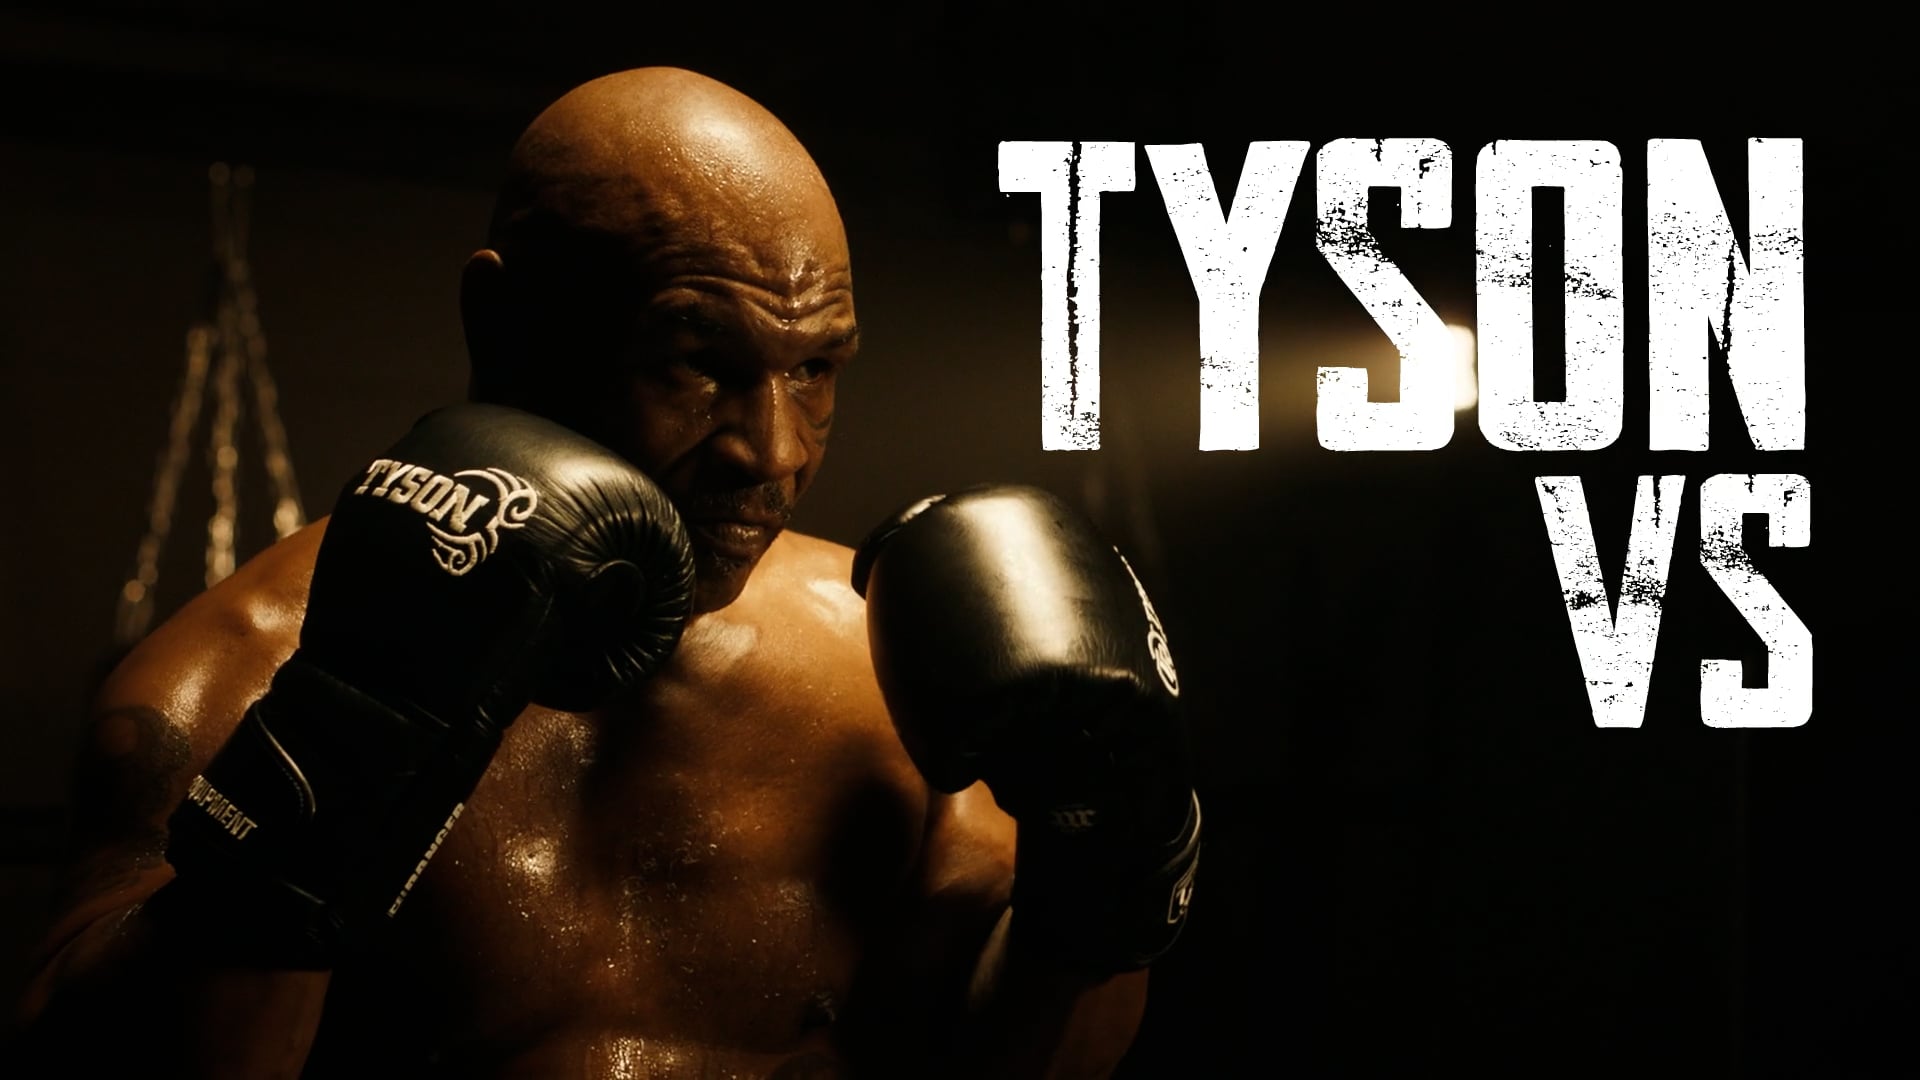 Triller - Tyson